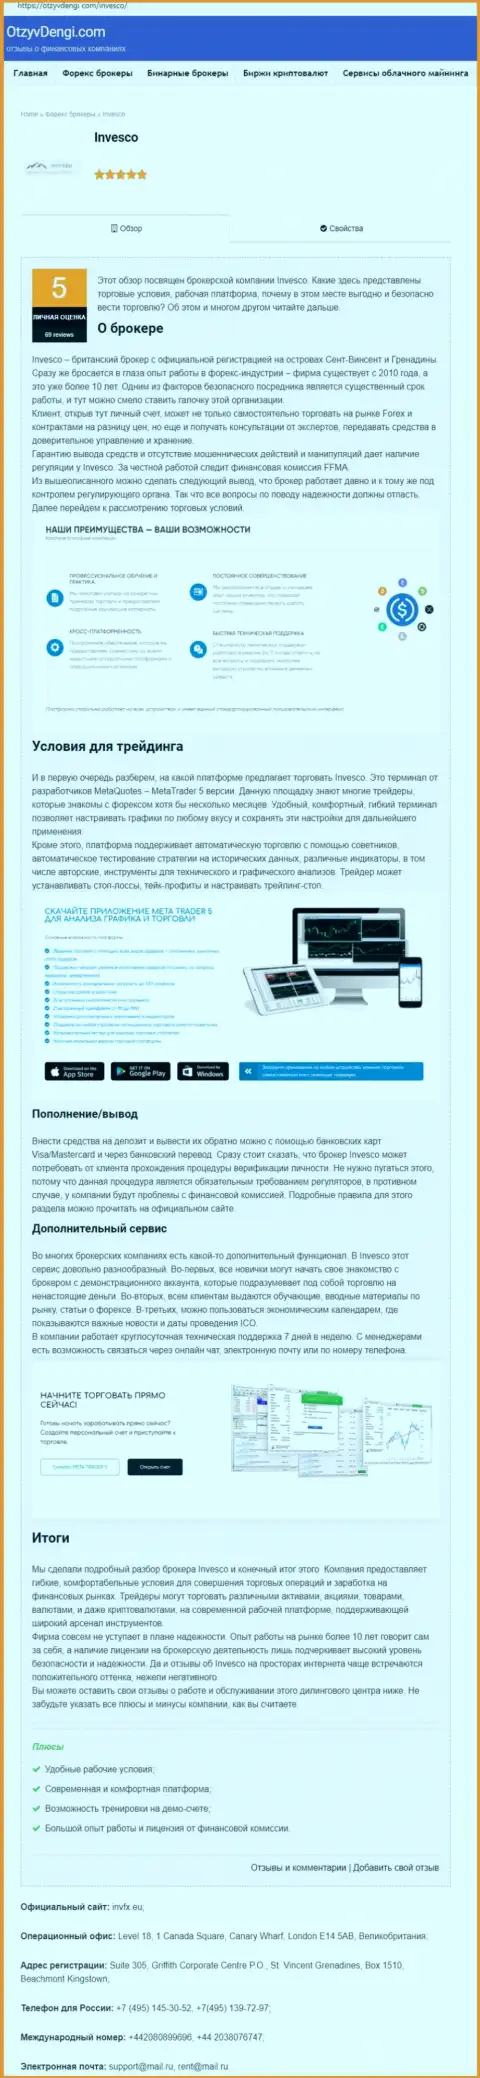 Информационный портал отзывденьги ком предоставил информационный материал о форекс брокерской компании INVFX Eu